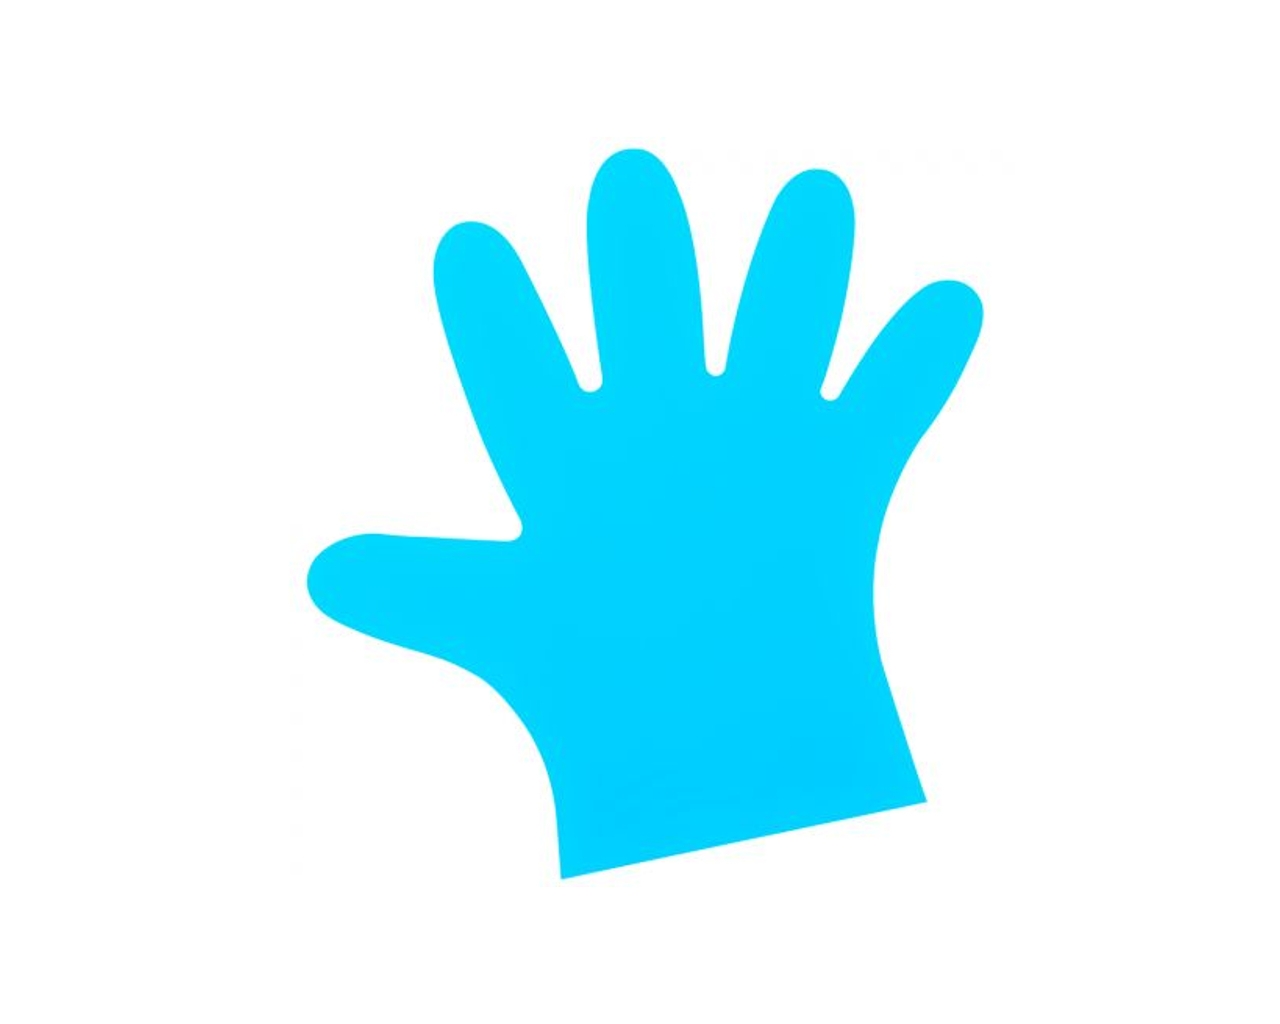 Rękawice elastomerowe, niebieskie, rozmiar S, opakowanie 100 szt.